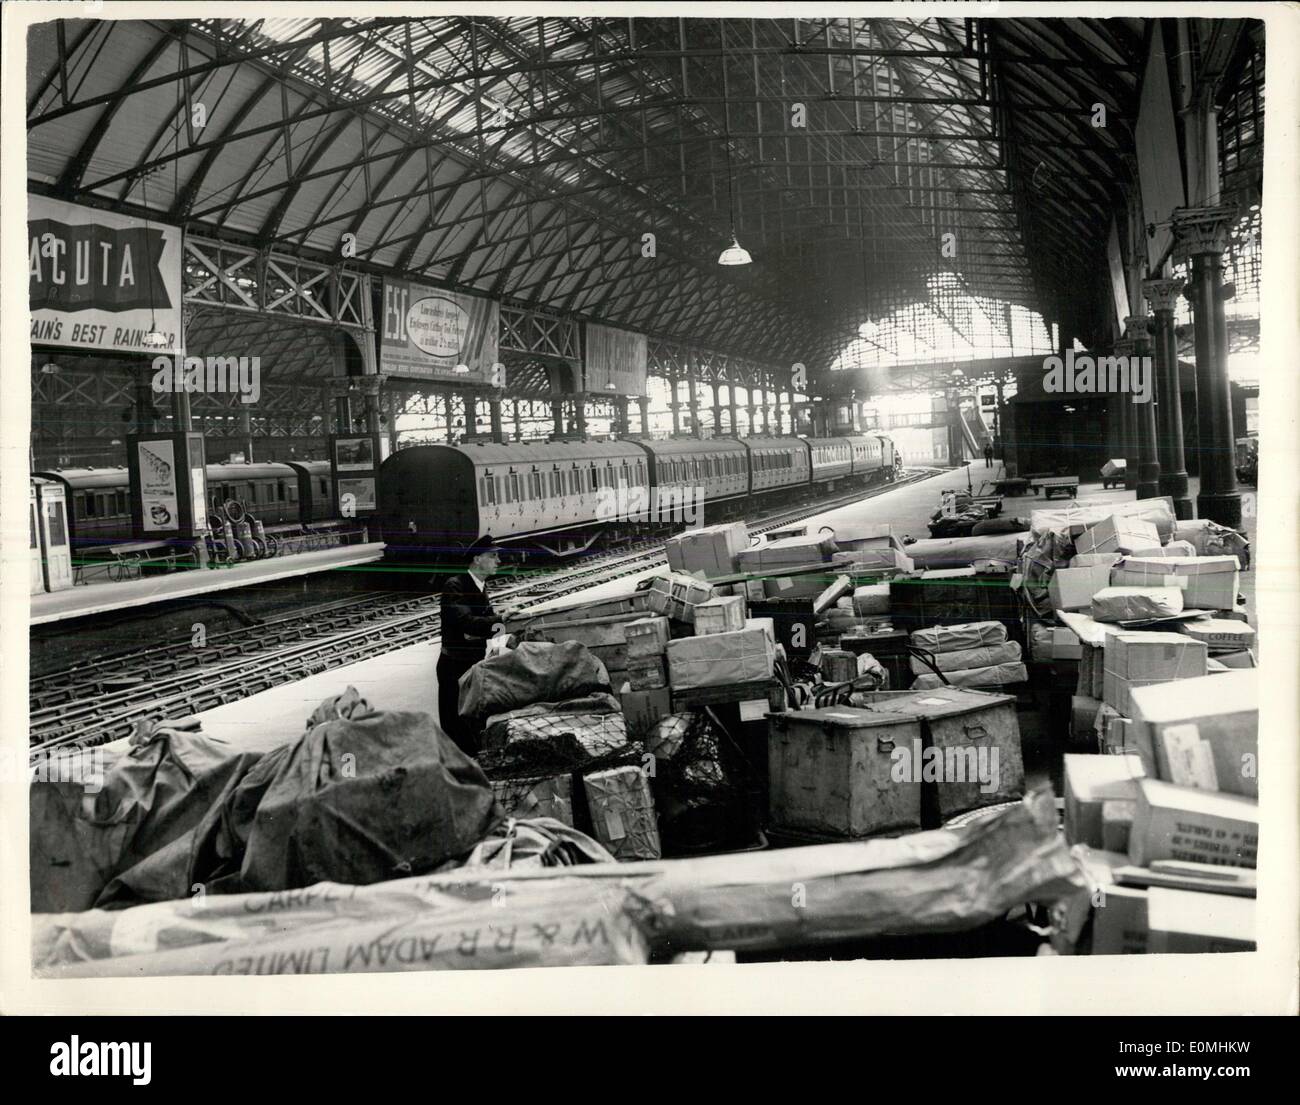 Giugno 01, 1955 - rampa - Colpo di scena in Manchester. La foto mostra: solo un pacco porter è stato quello di essere visto a Londra Road Station, in Manchester di domenica. Foto Stock